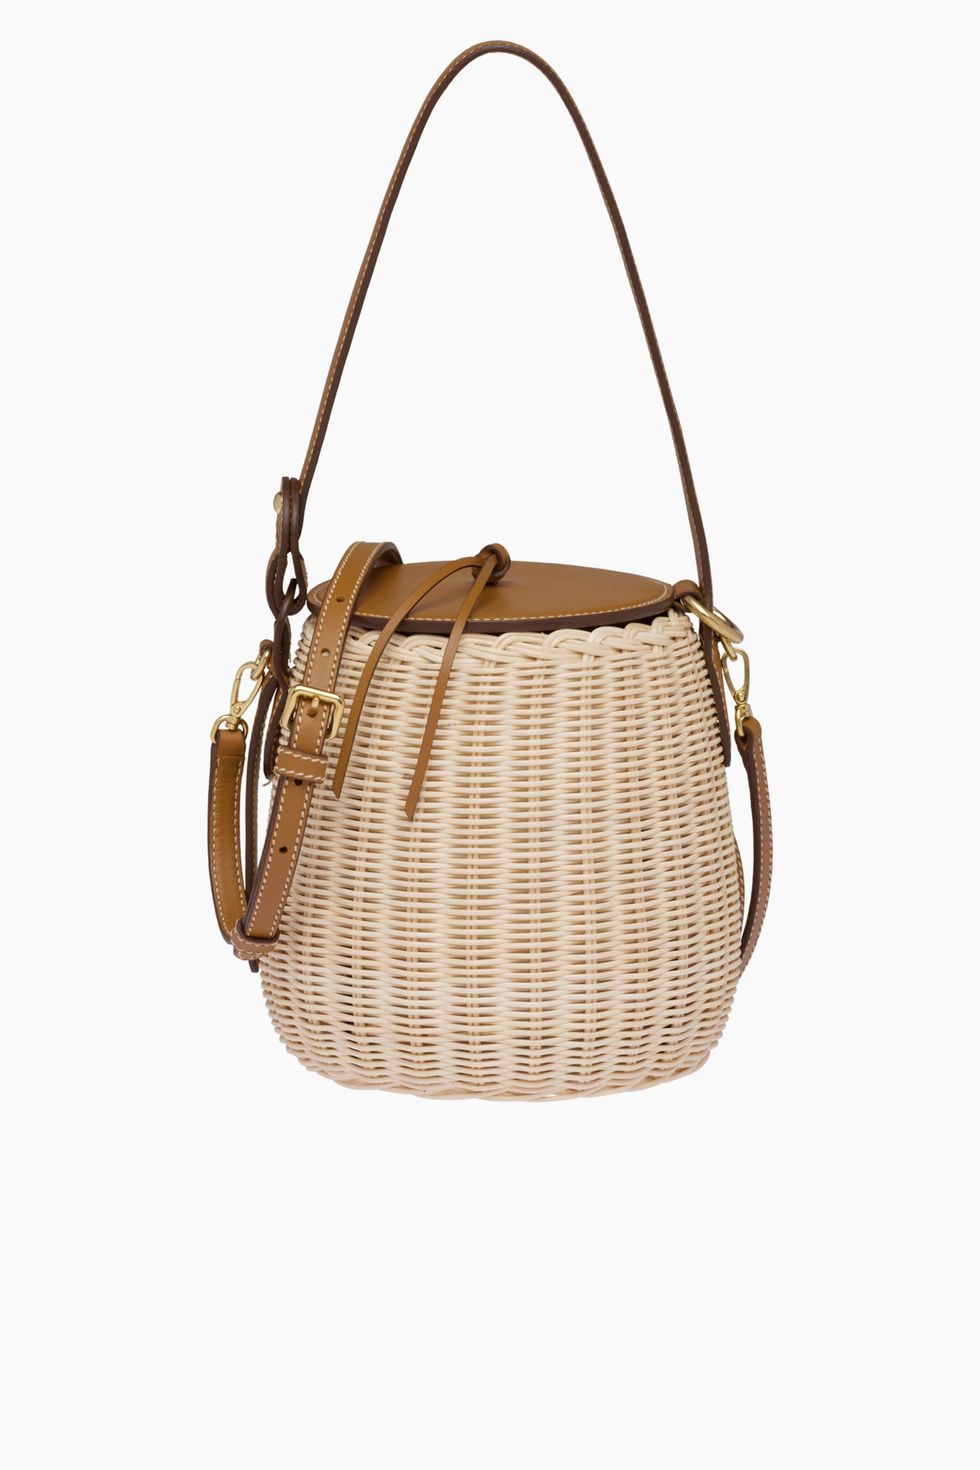 La cesta de de Jane Birkin es el bolso del verano